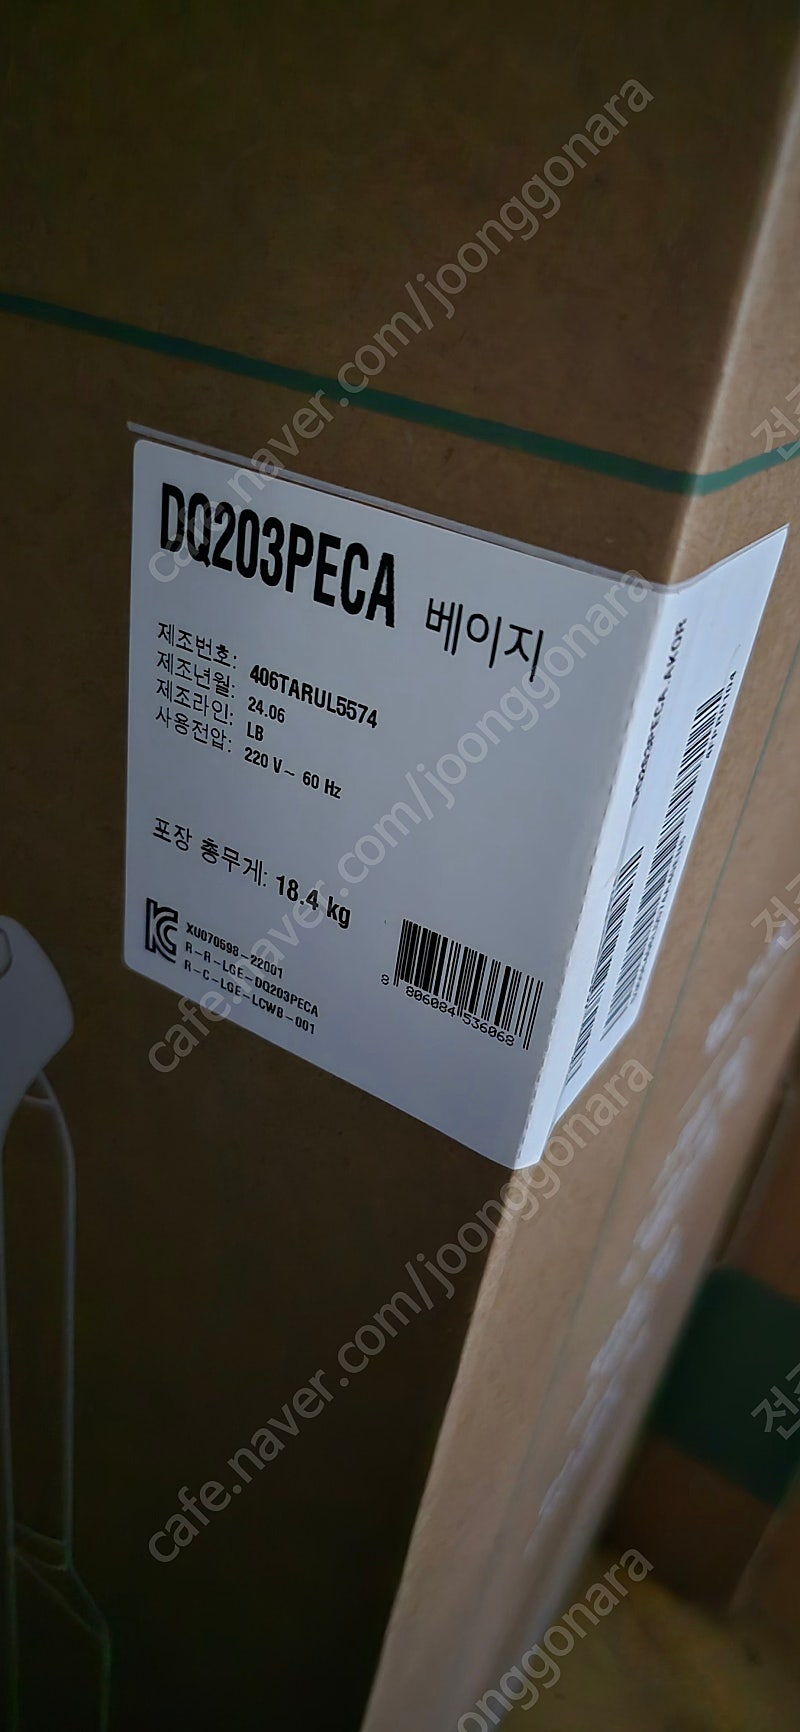 미개봉)LG 휘센 오브제컬렉션 제습기 DQ203PECA 판매함